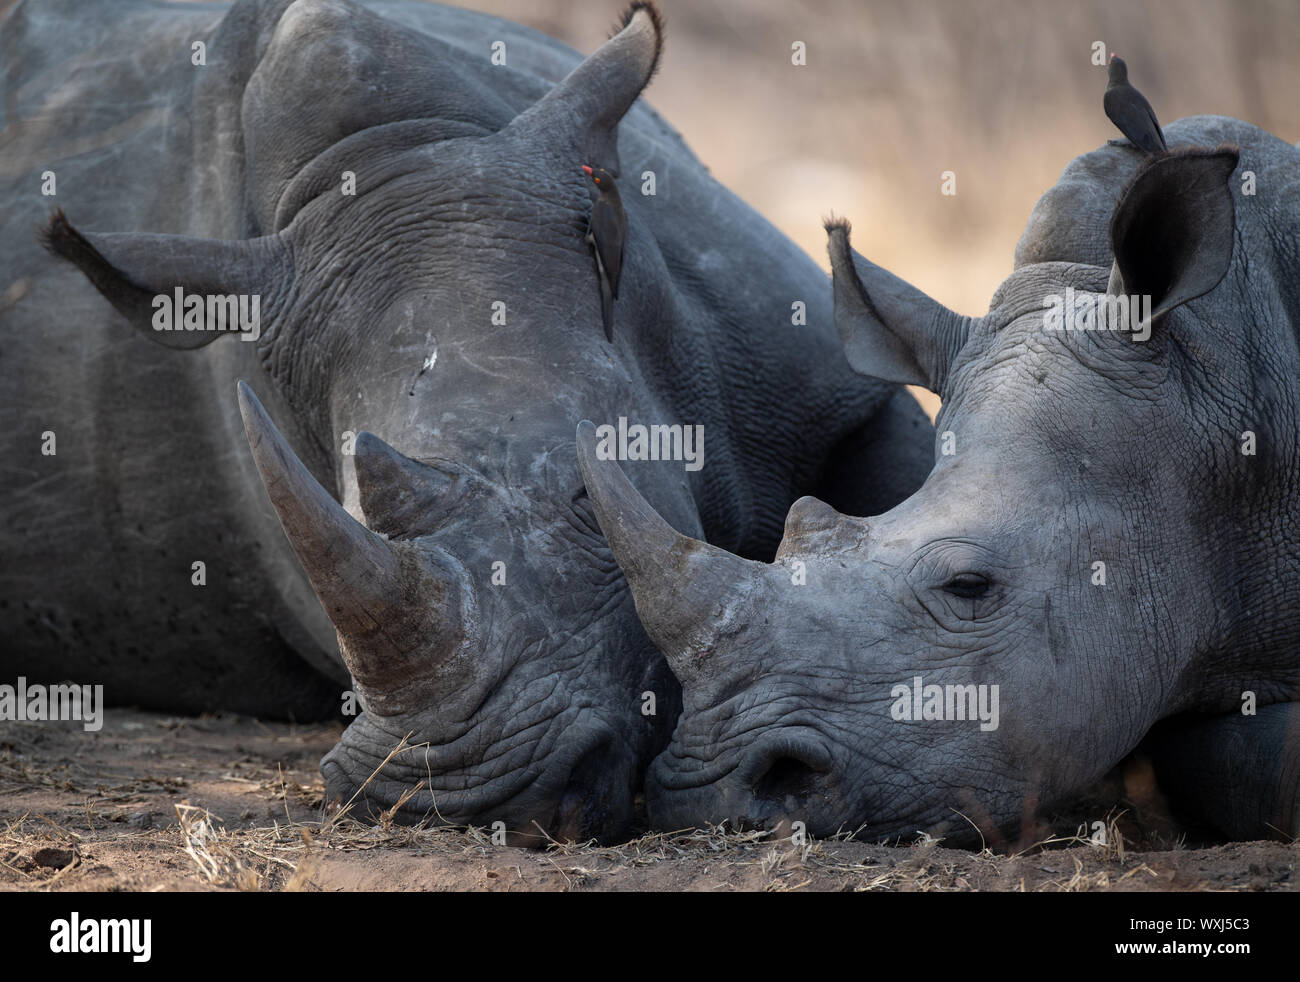 Vache veau rhinocéros et de couchage, Afrique du Sud Banque D'Images